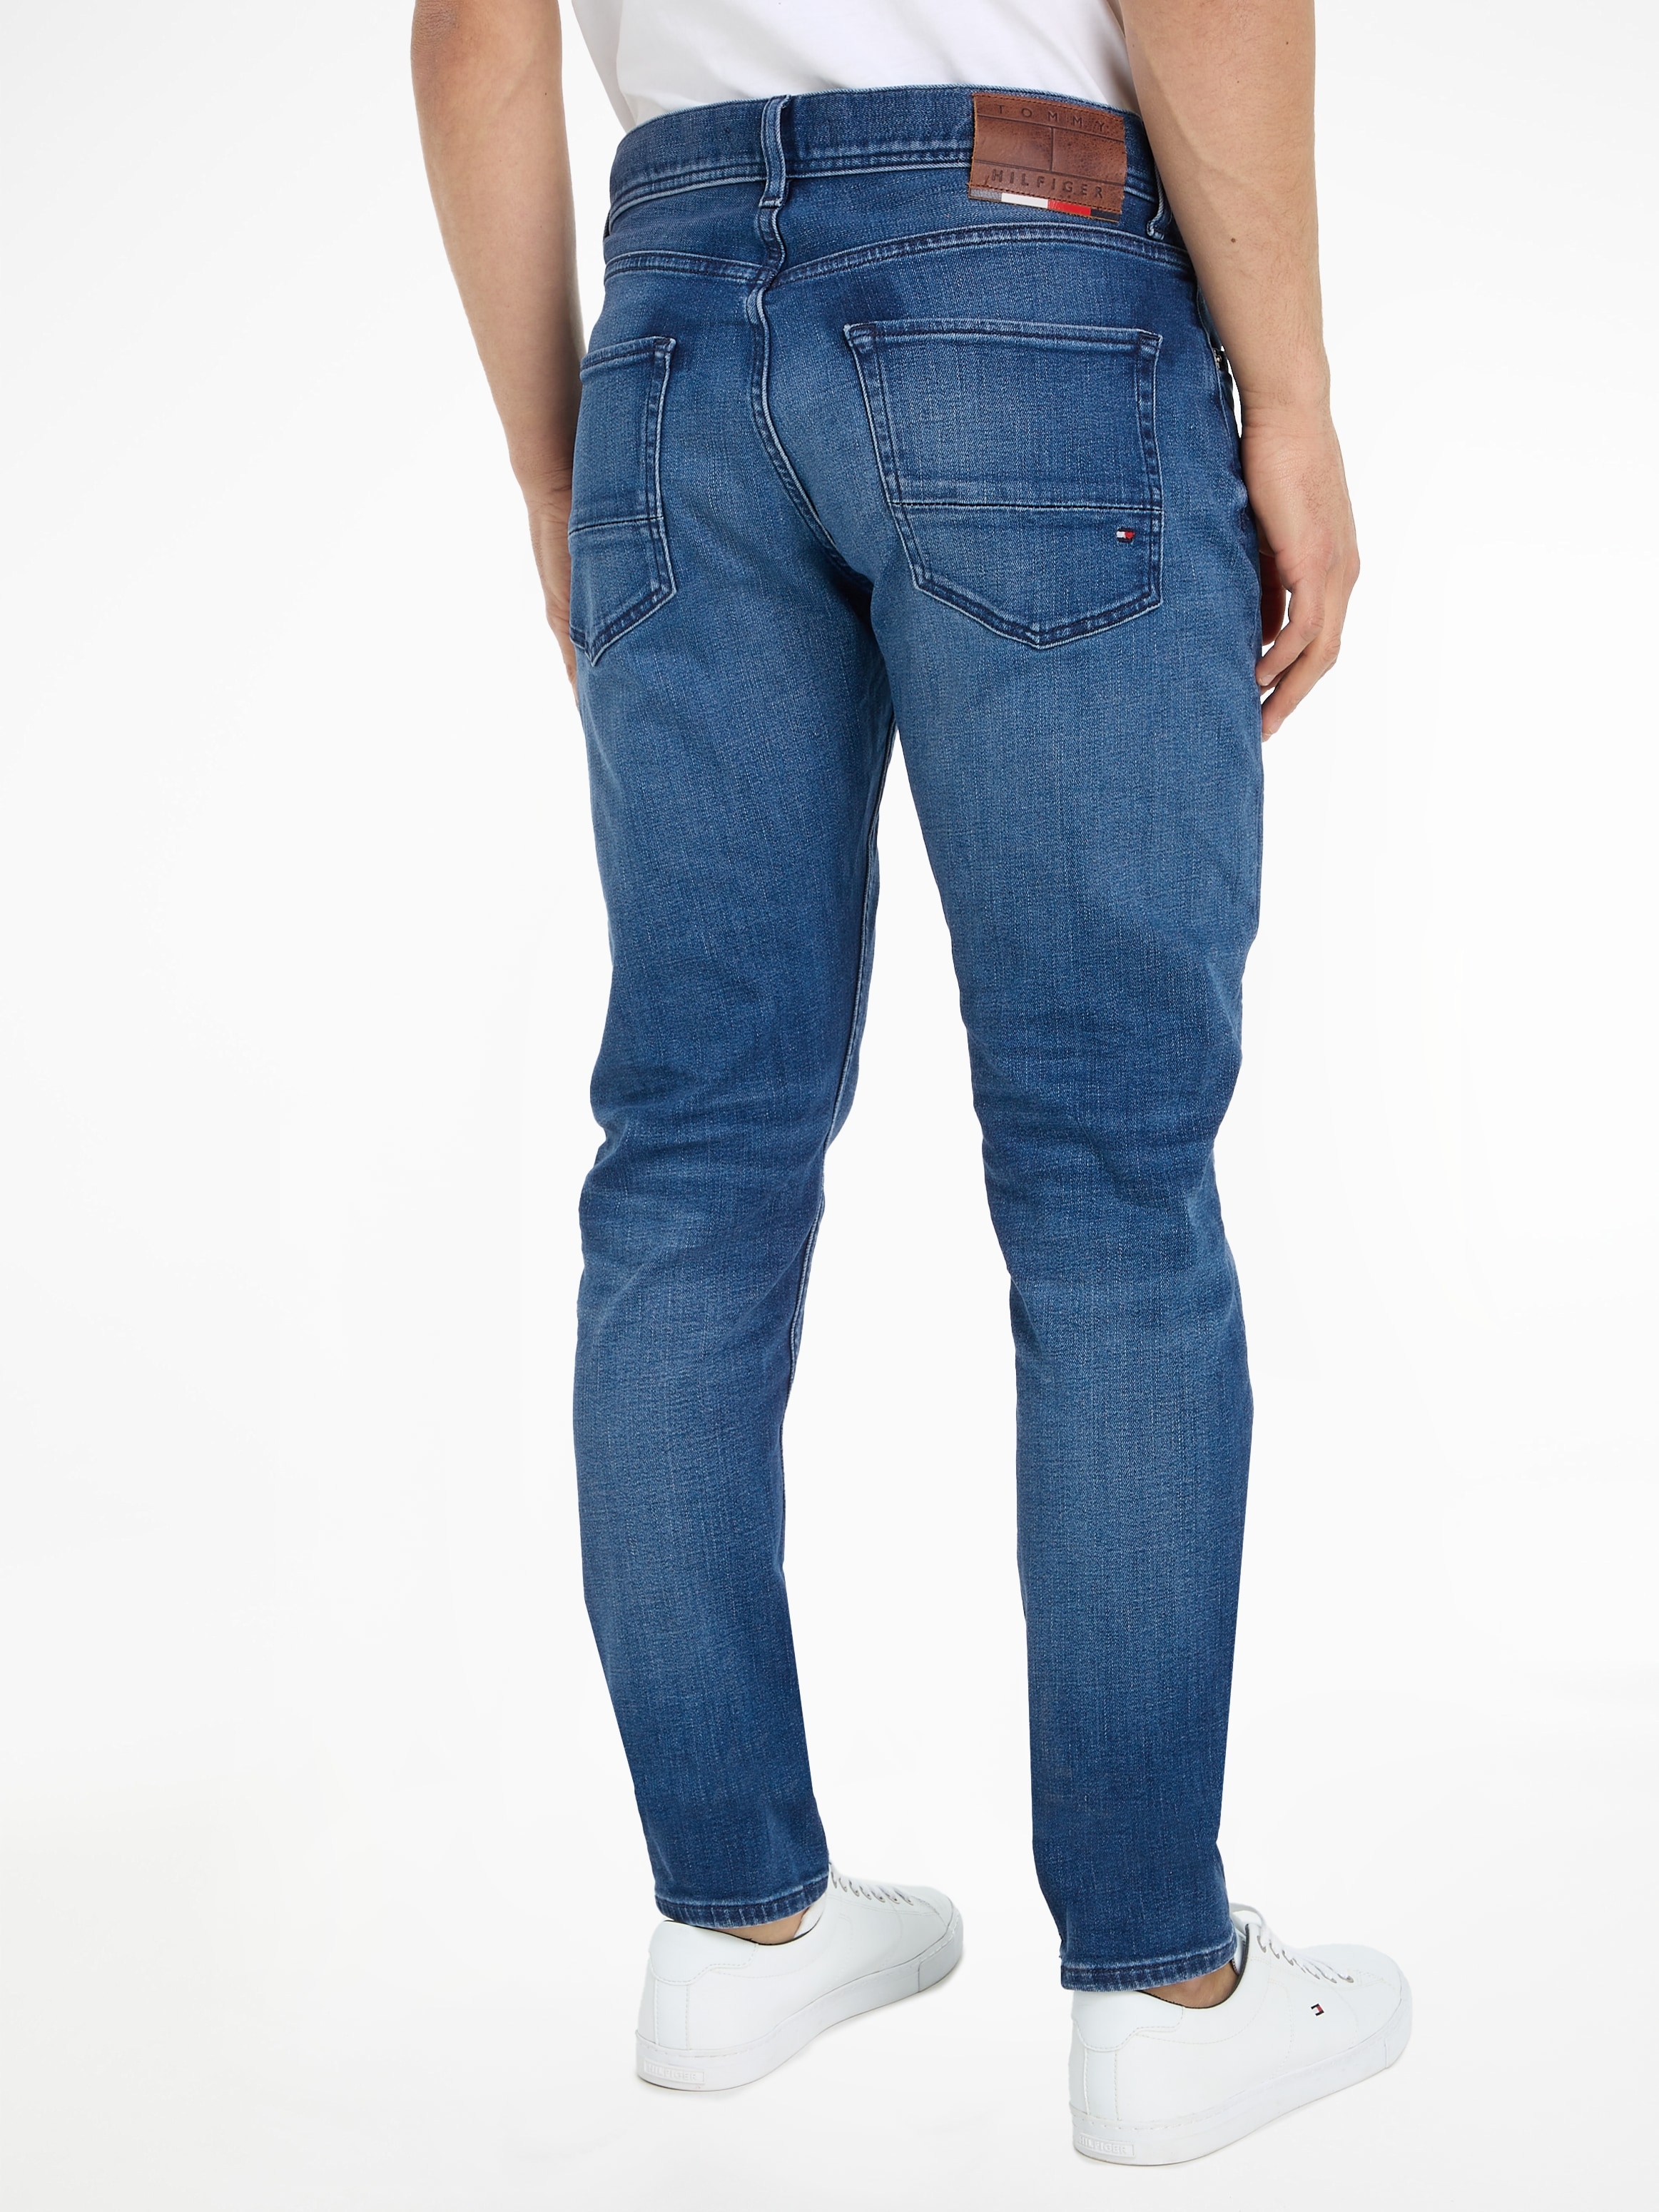 ➤ Bequeme - Jeans bestellen versandkostenfrei Mindestbestellwert ohne